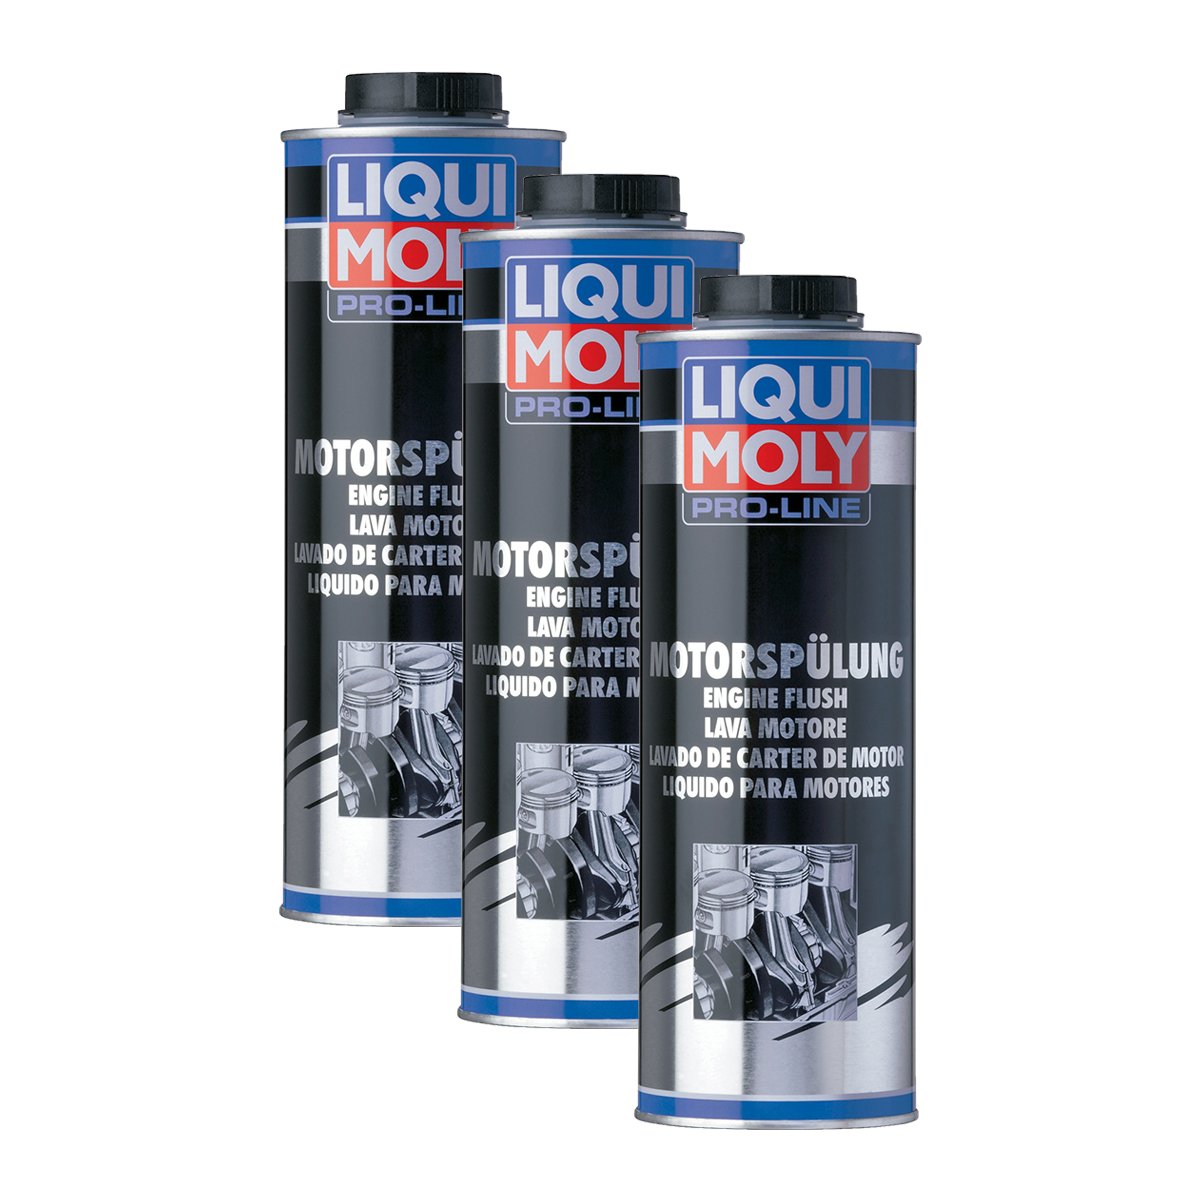 3x LIQUI MOLY 2425 Pro-Line Motorspülung Motor Reiniger Öl Zusatz 1L von LIQUI-MOLY_bundle